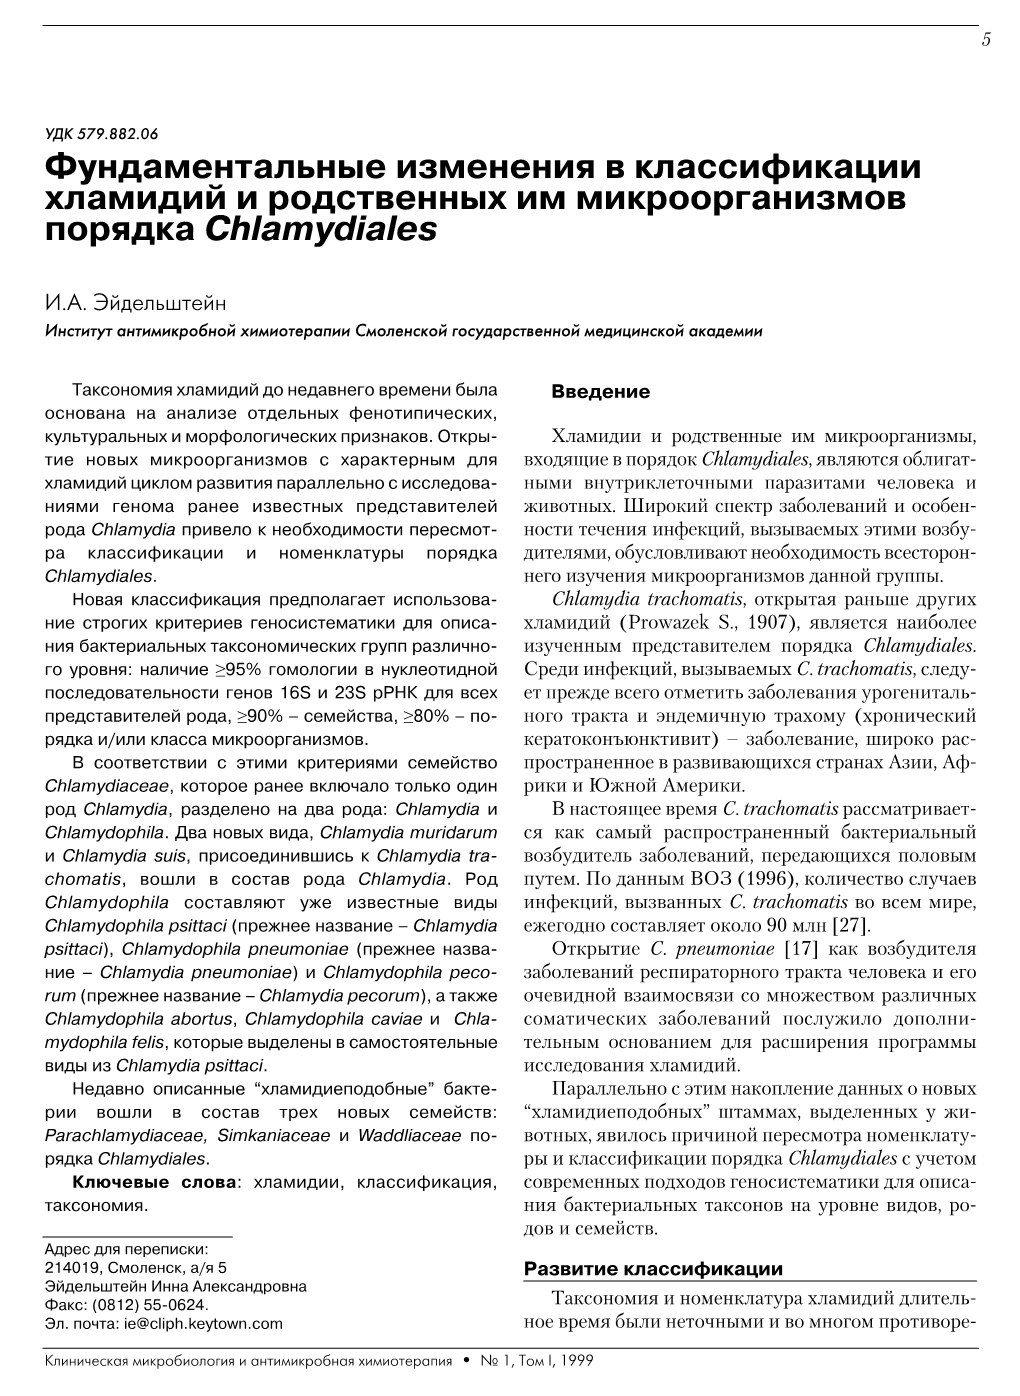 Фундаментальные Изменения В Классификации Хламидий И Родственных Им Микроорганизмов Порядка Chlamydiales